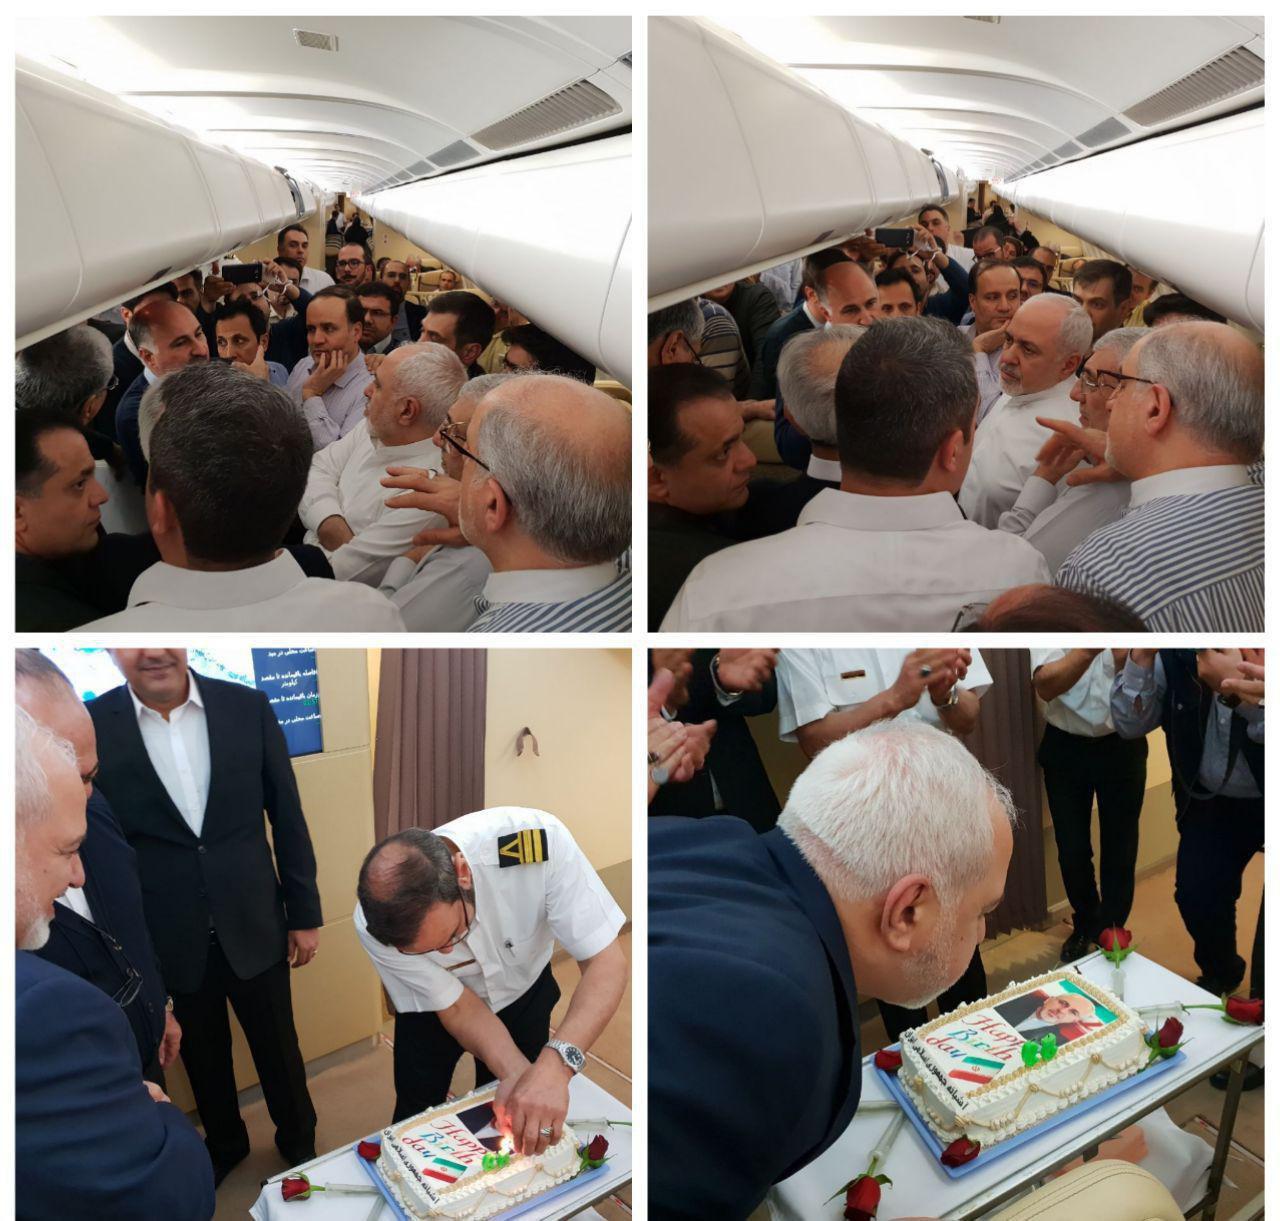 تصاویر غافلگیری محمدجواد ظریف در هواپیما | تولدی که عوامل پرواز برای وزیر خارجه به پا کردند